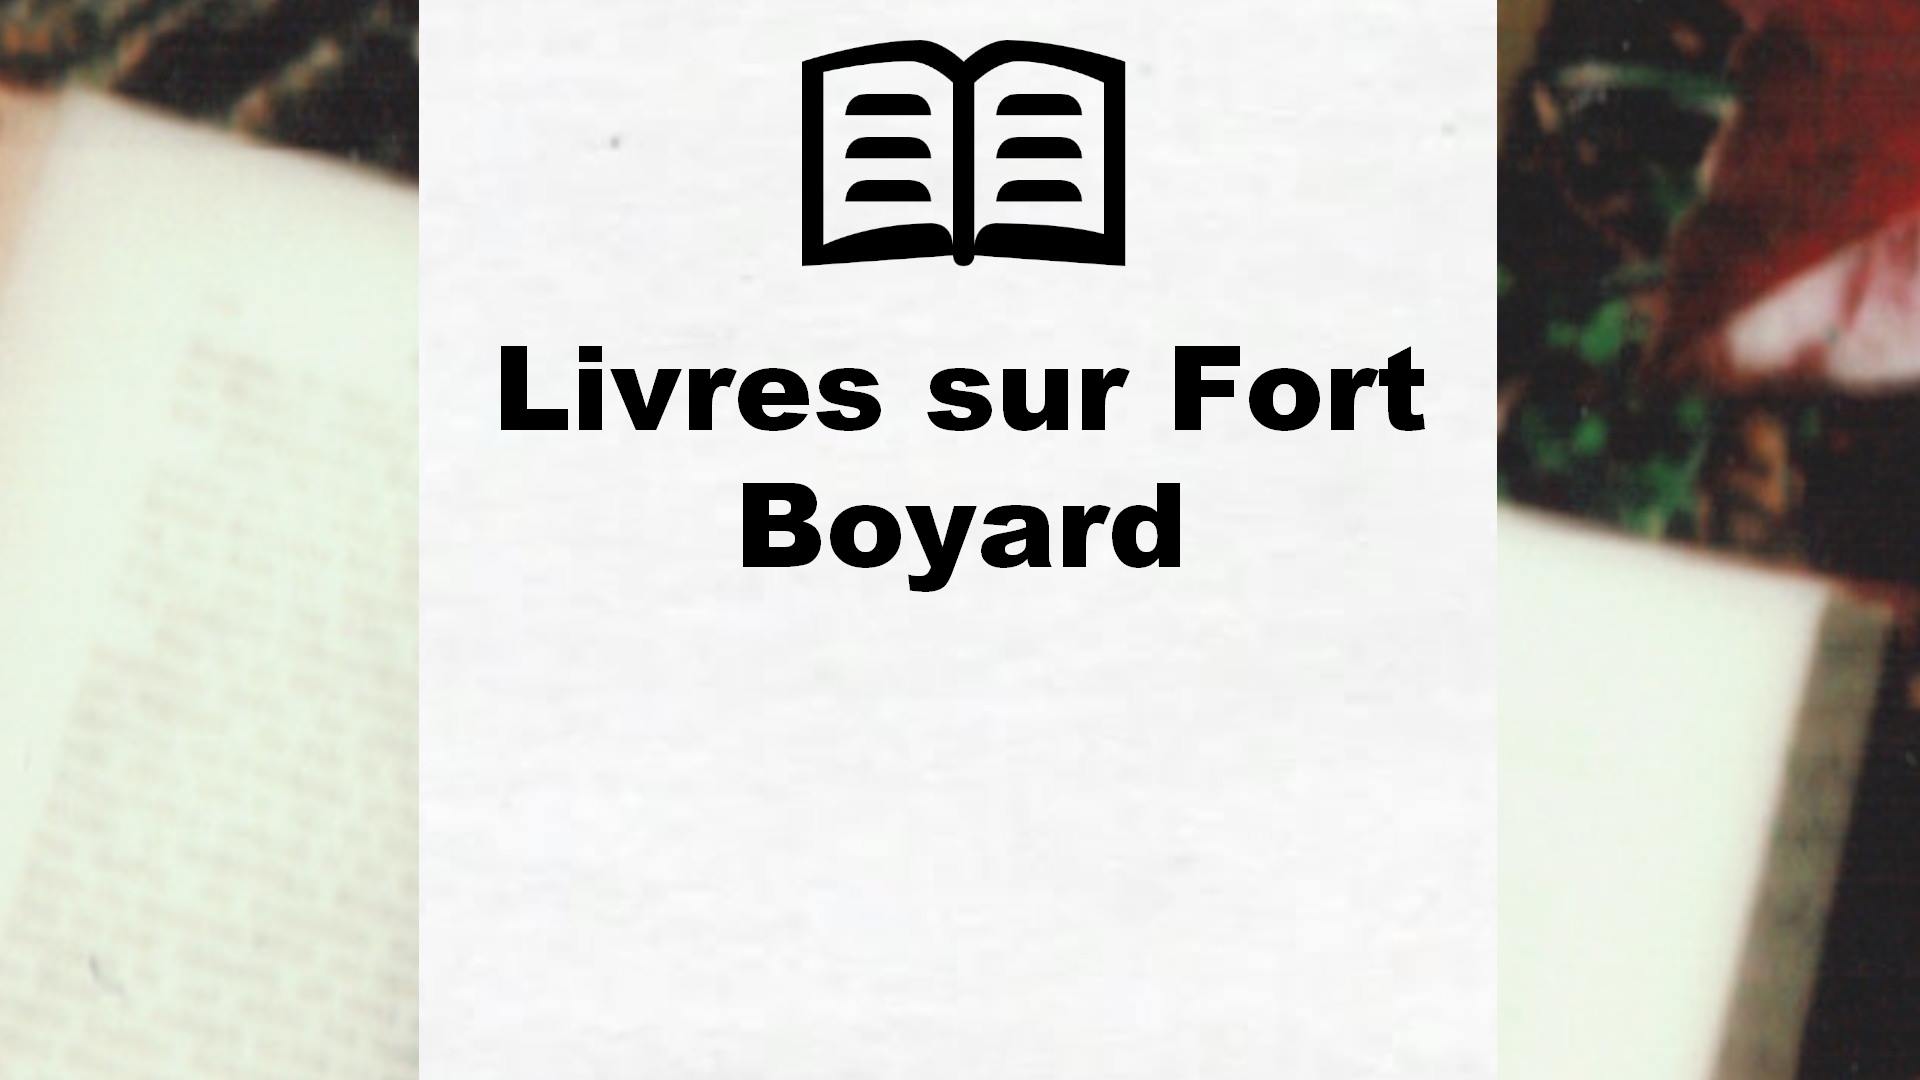 Livres sur Fort Boyard